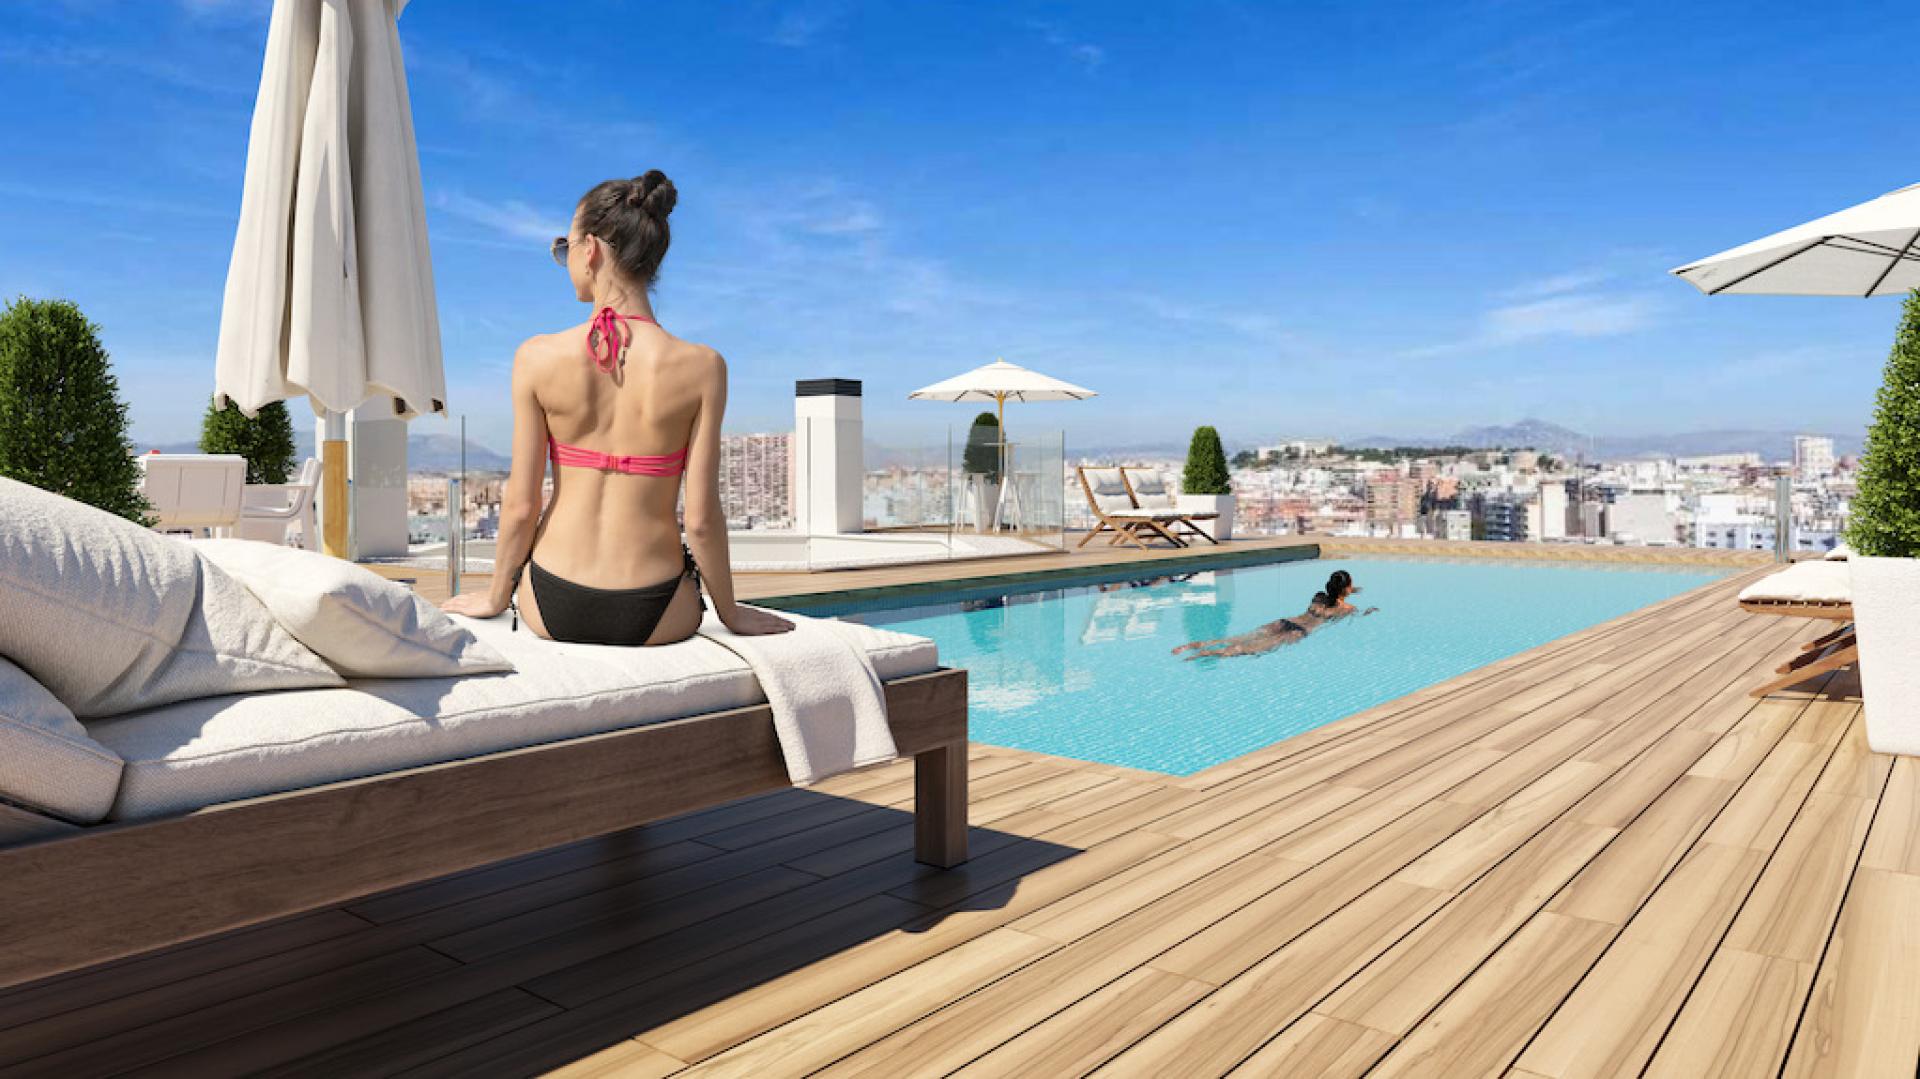 4 slaapkamer Appartement met terras in Alicante - Nieuwbouw in Medvilla Spanje